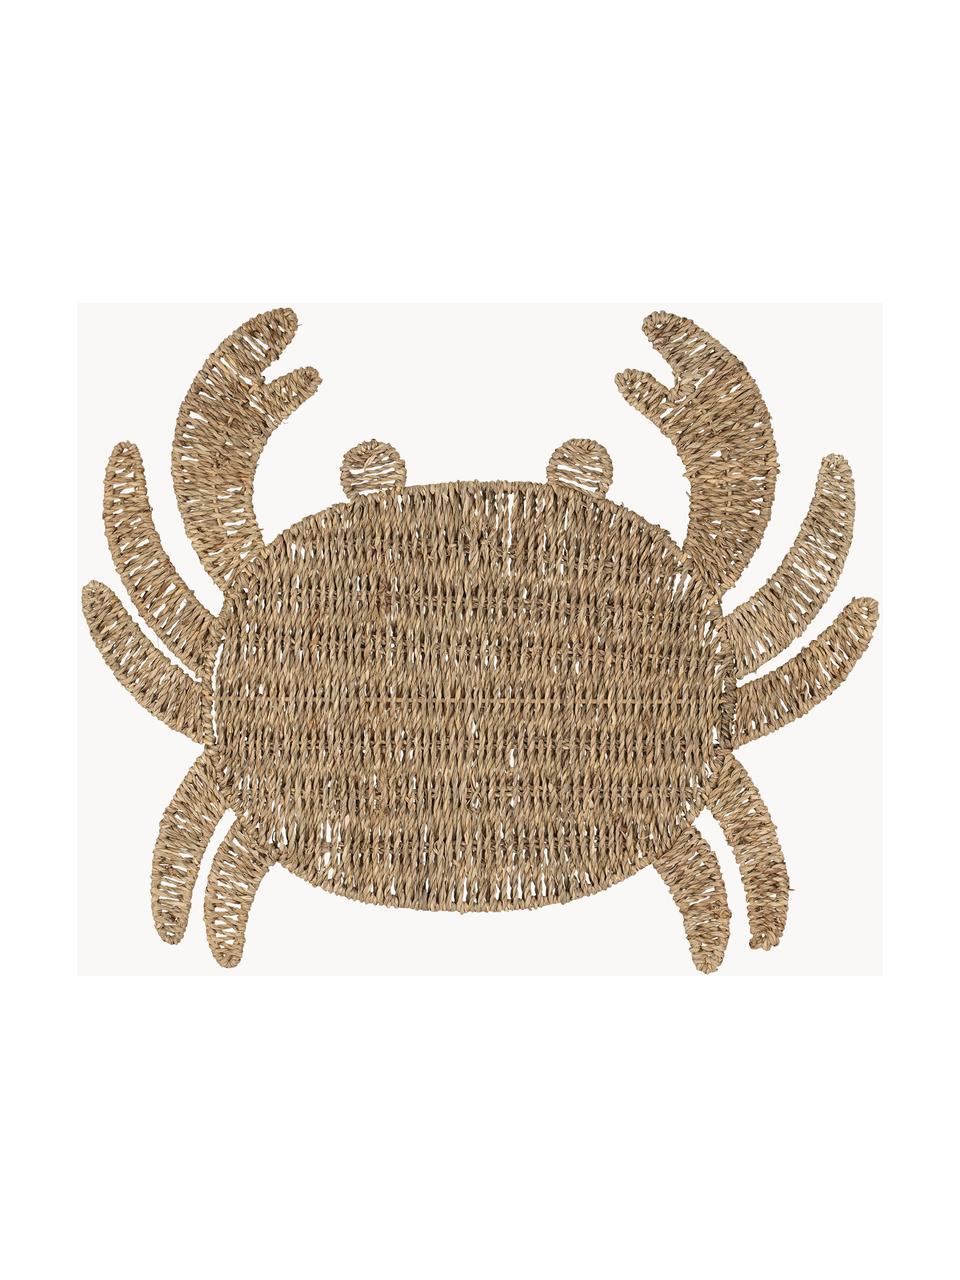 Seegras-Tischset Crab in Krebsform, Seegras, Beige, B 38 x L 48 cm